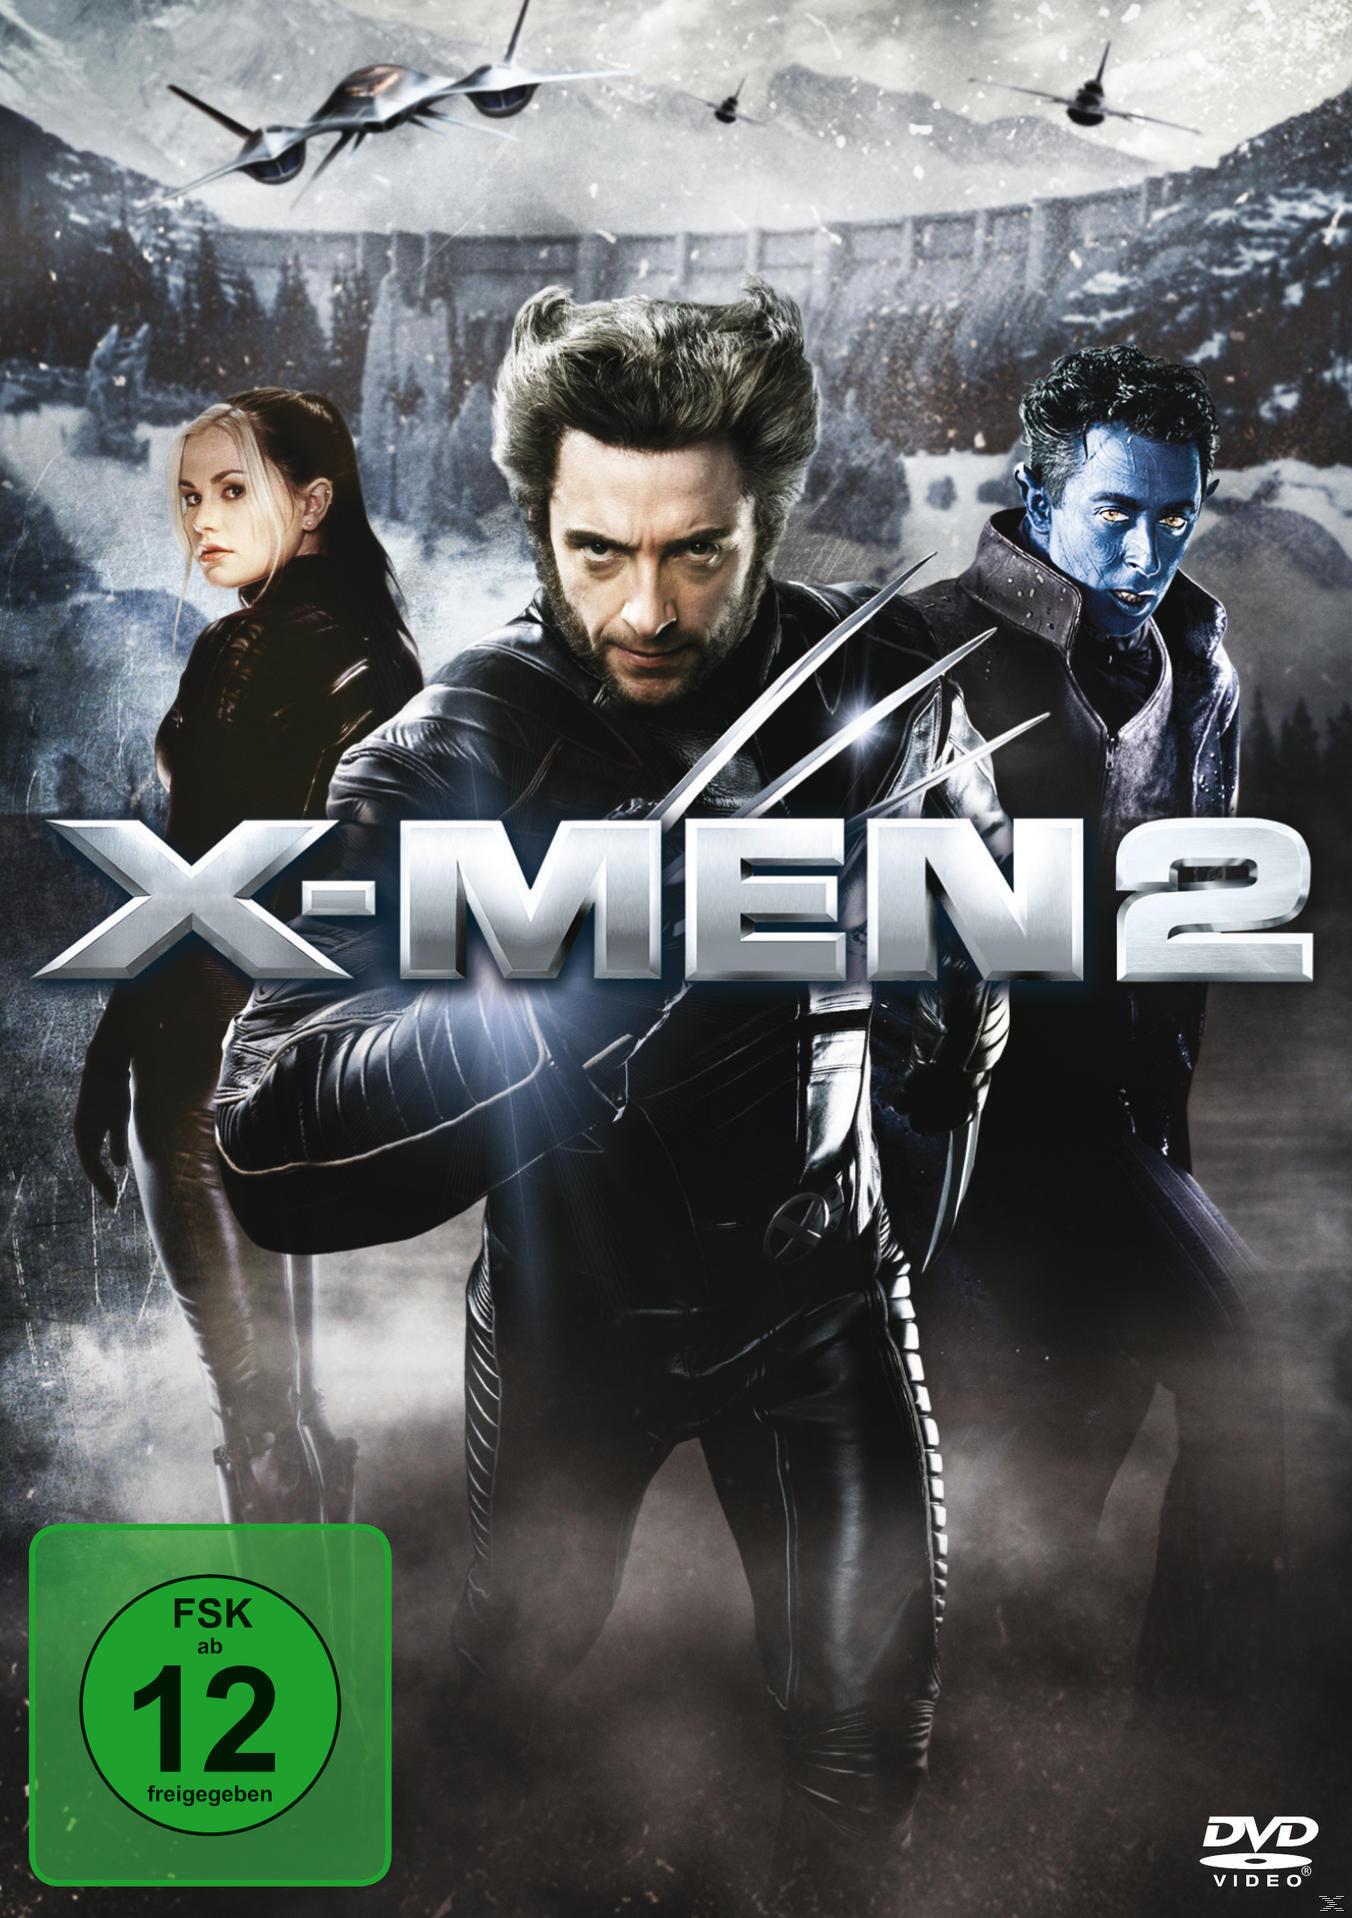 2 - Men X DVD